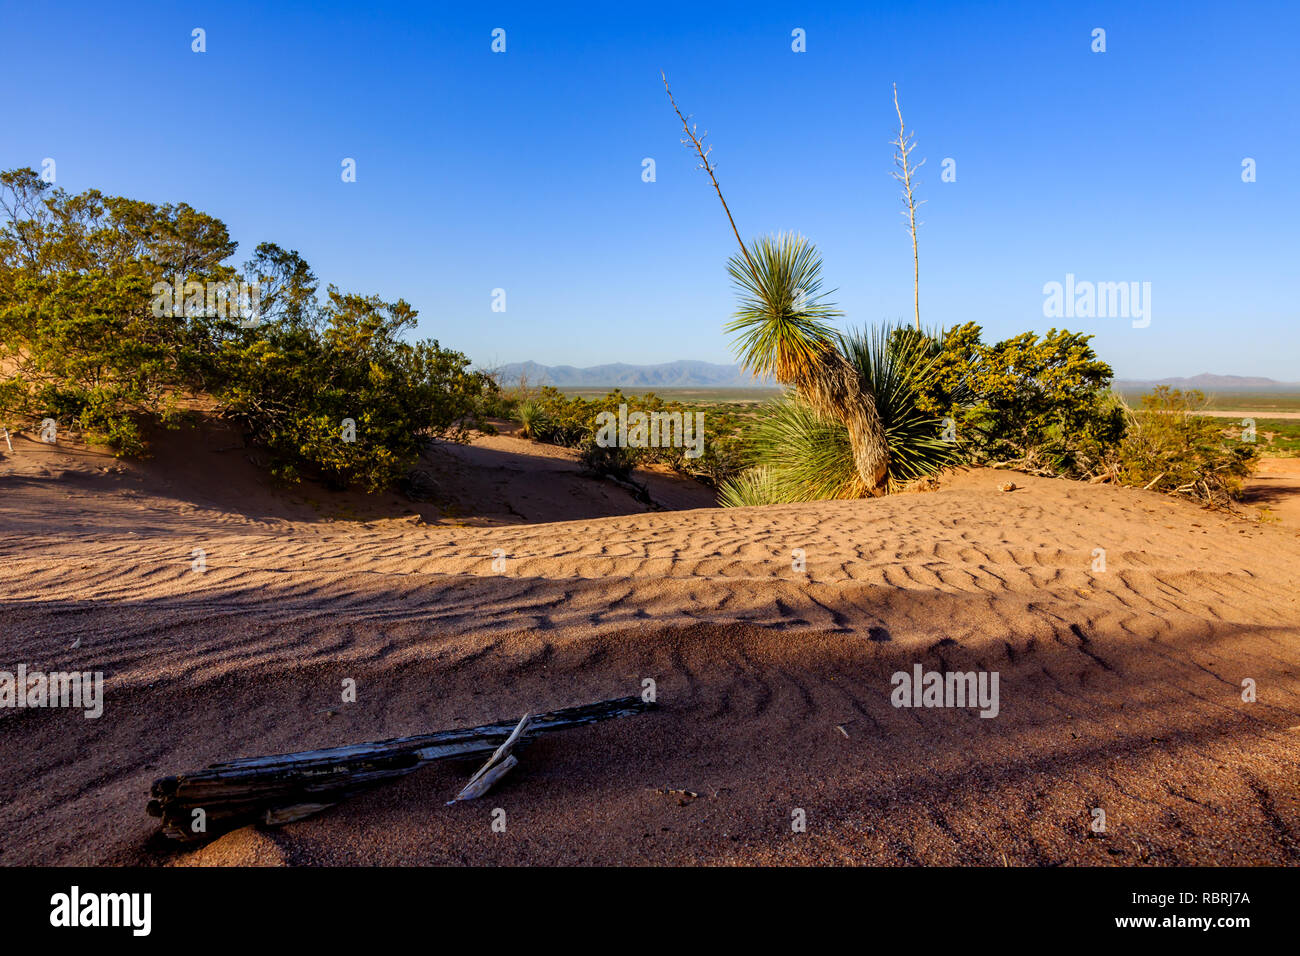 Así calientes dunas skyprovide único hábitat del desierto y oportunidades recreativas. El sur de Arizona. Foto de stock